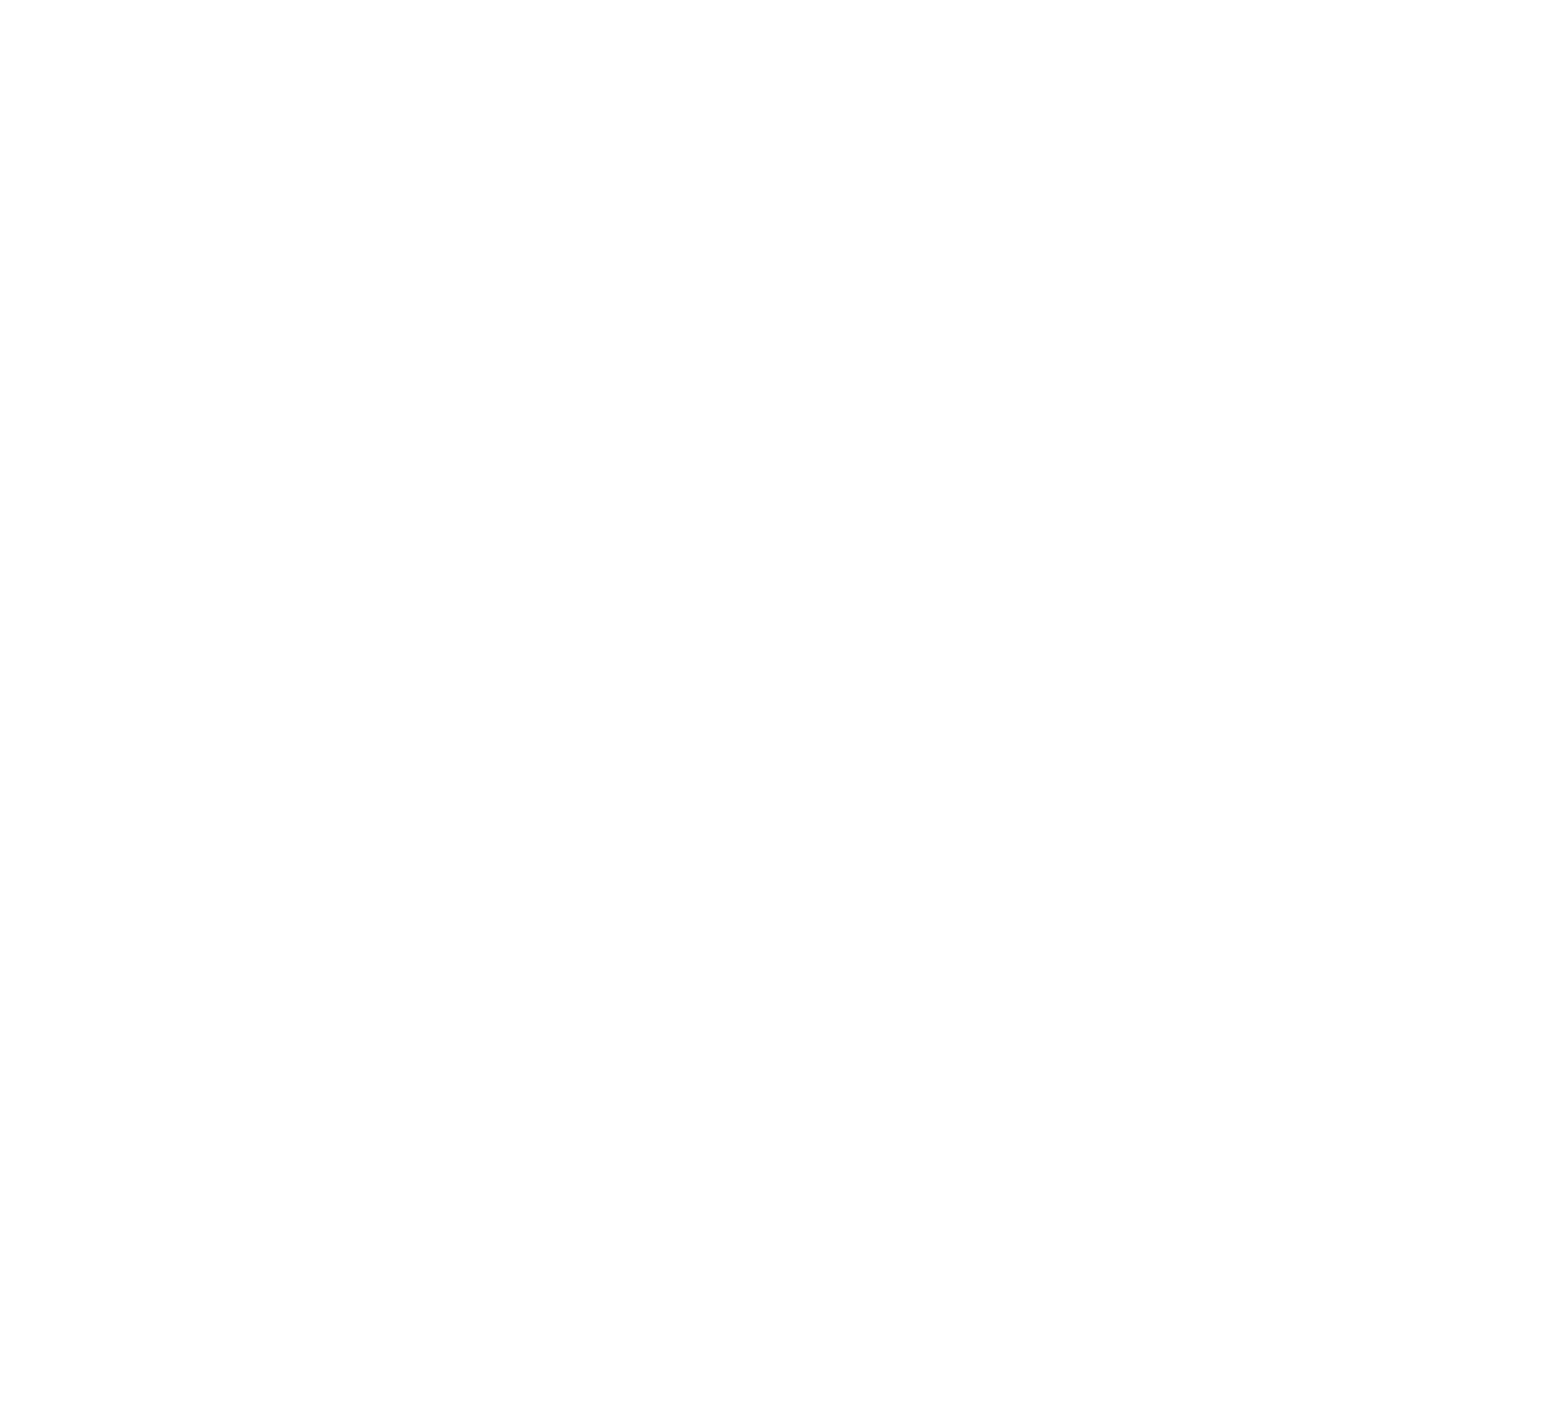 Momentus logo grand pour les fonds sombres (PNG transparent)